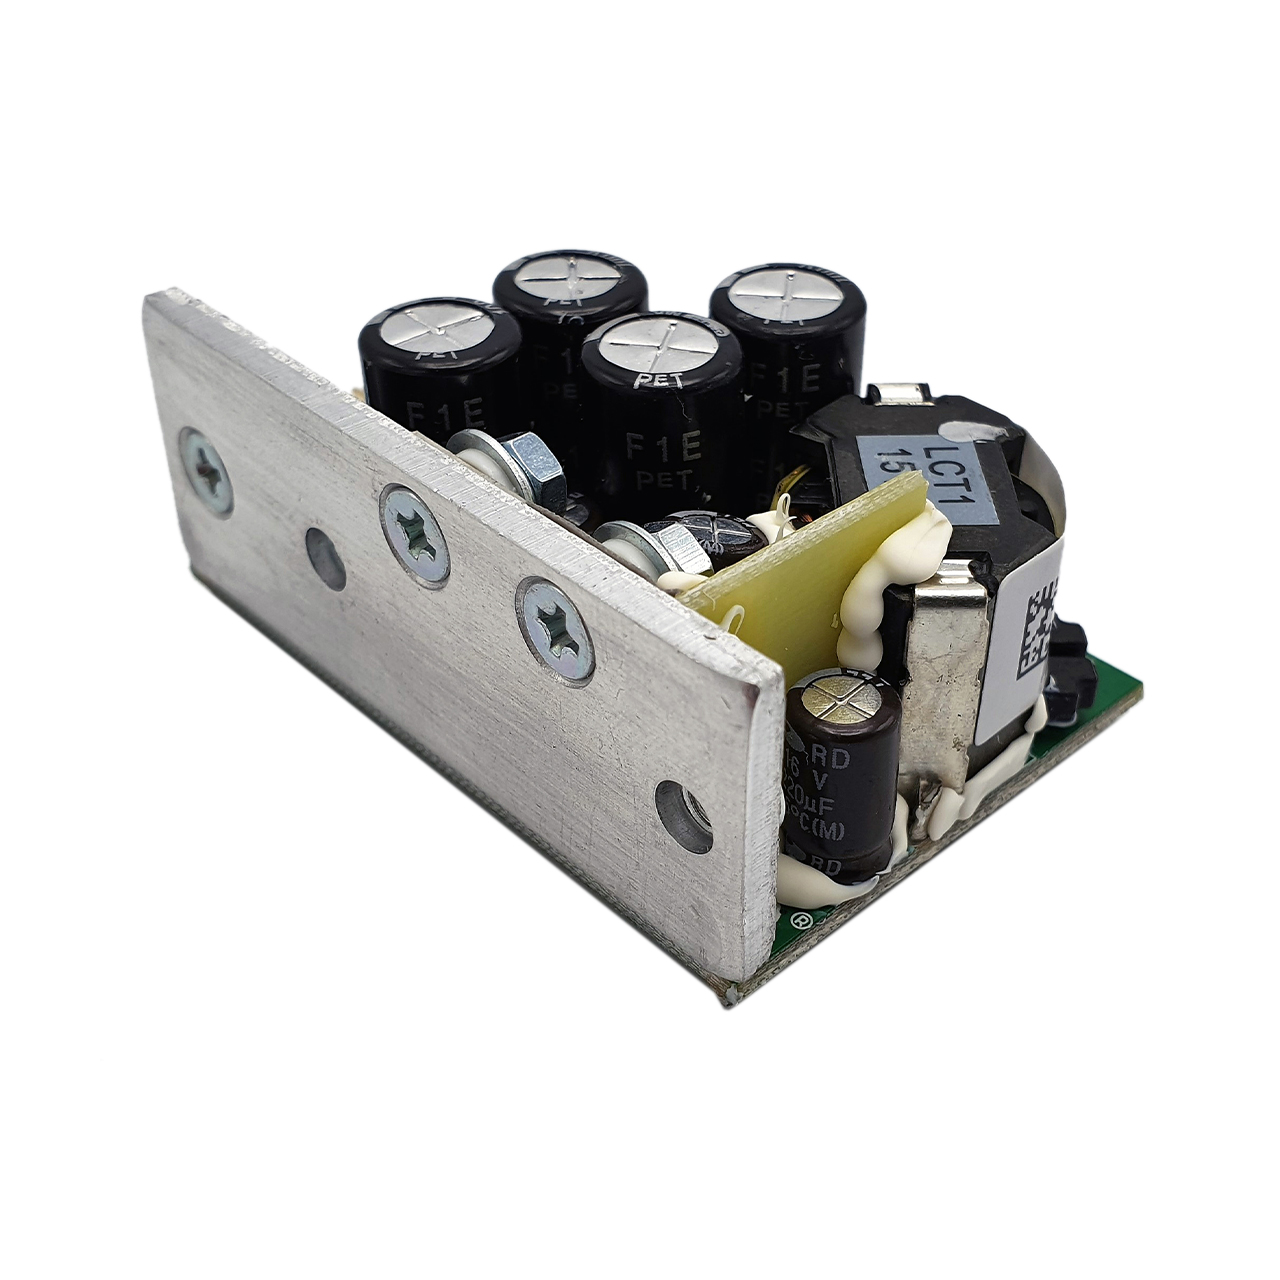 Hypex UcD™ 400LP OEM amplifier module